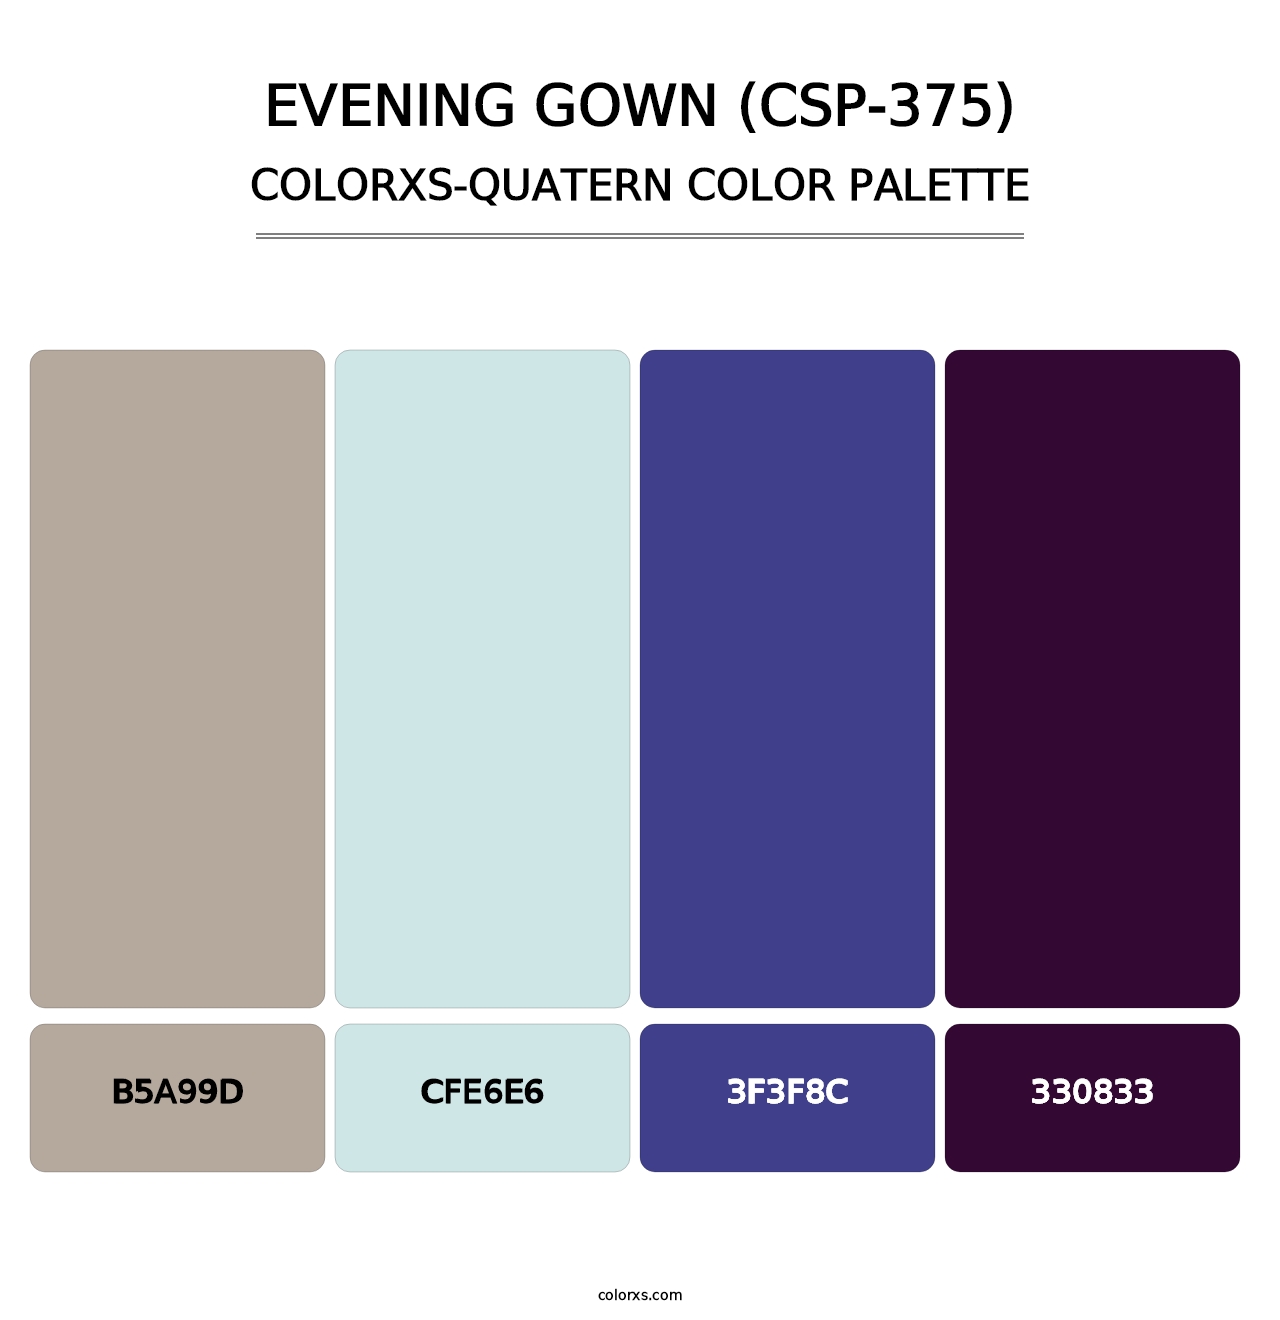 Evening Gown (CSP-375) - Colorxs Quatern Palette